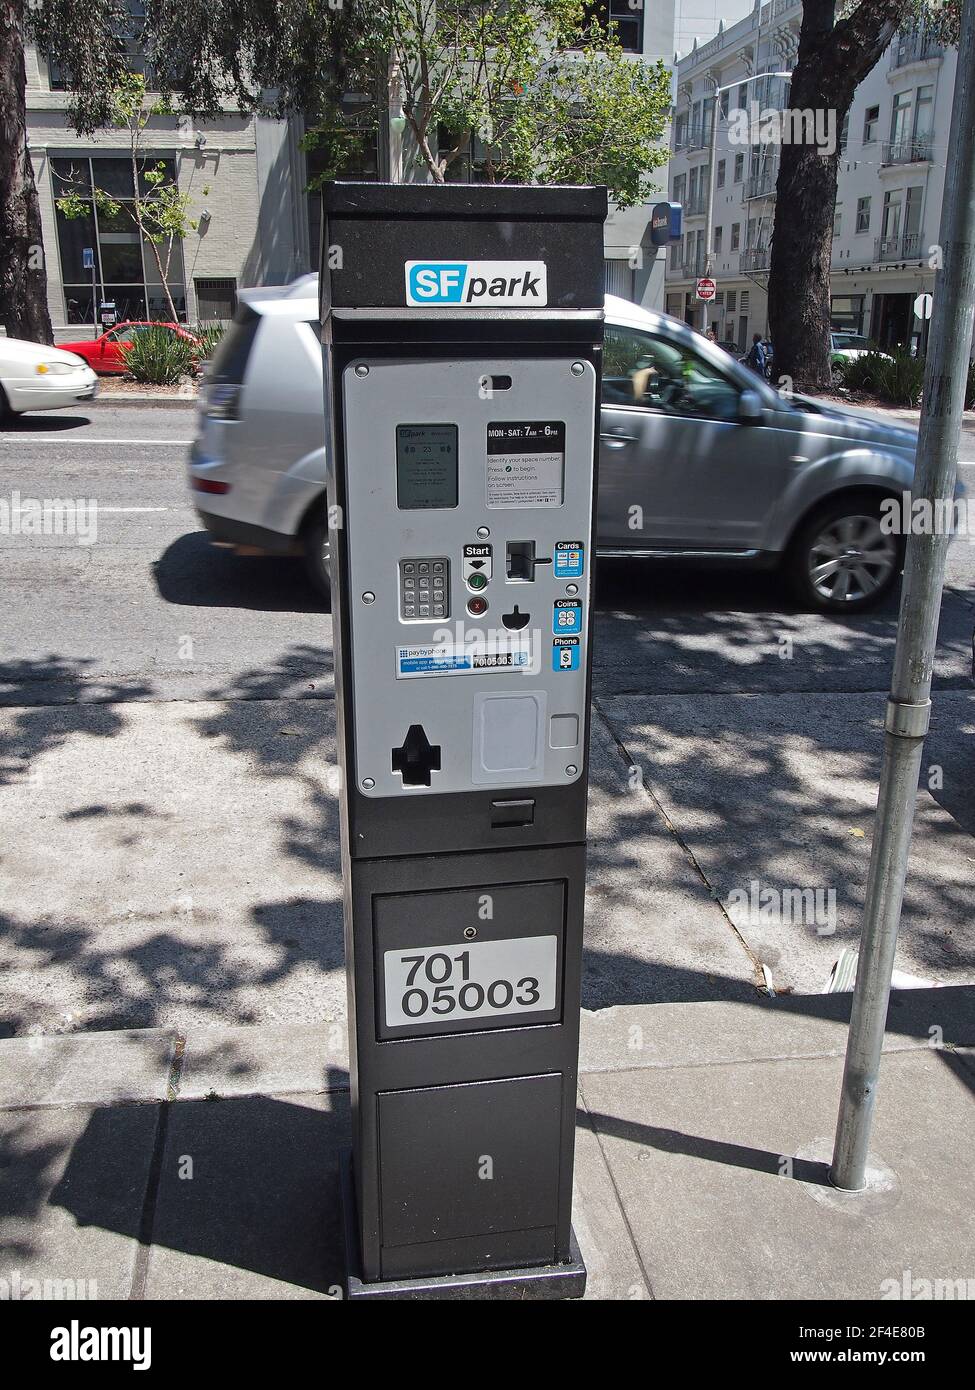 Compteur de paiement pour le parking de SF Park à San Francisco, Californie Banque D'Images